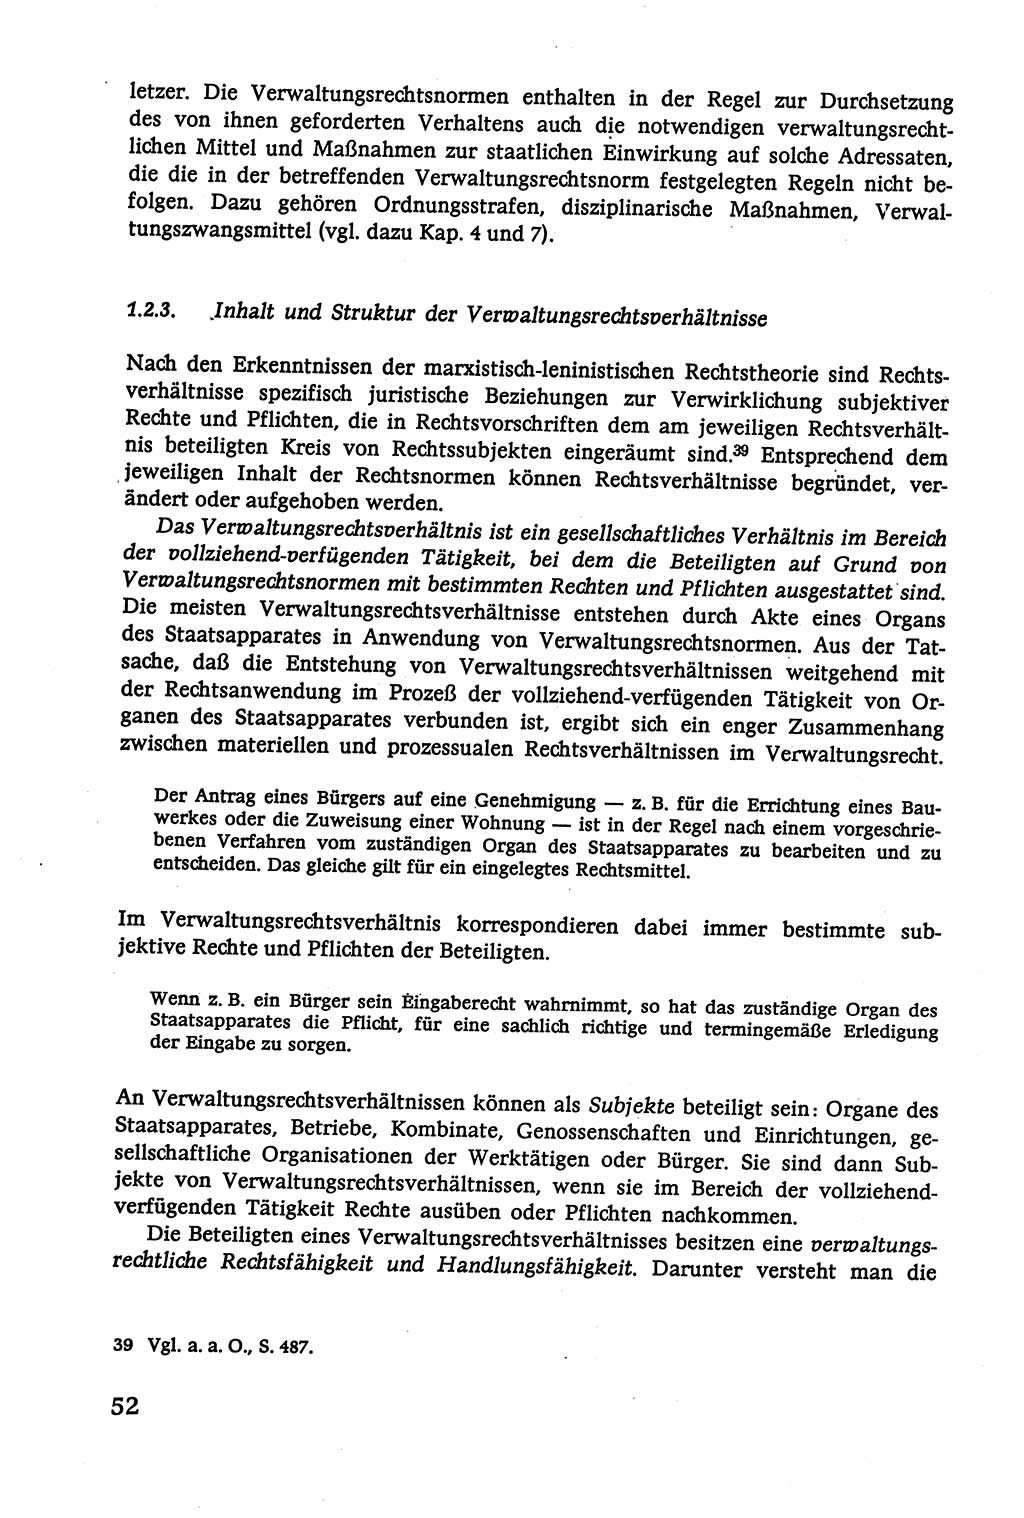 Verwaltungsrecht [Deutsche Demokratische Republik (DDR)], Lehrbuch 1979, Seite 52 (Verw.-R. DDR Lb. 1979, S. 52)